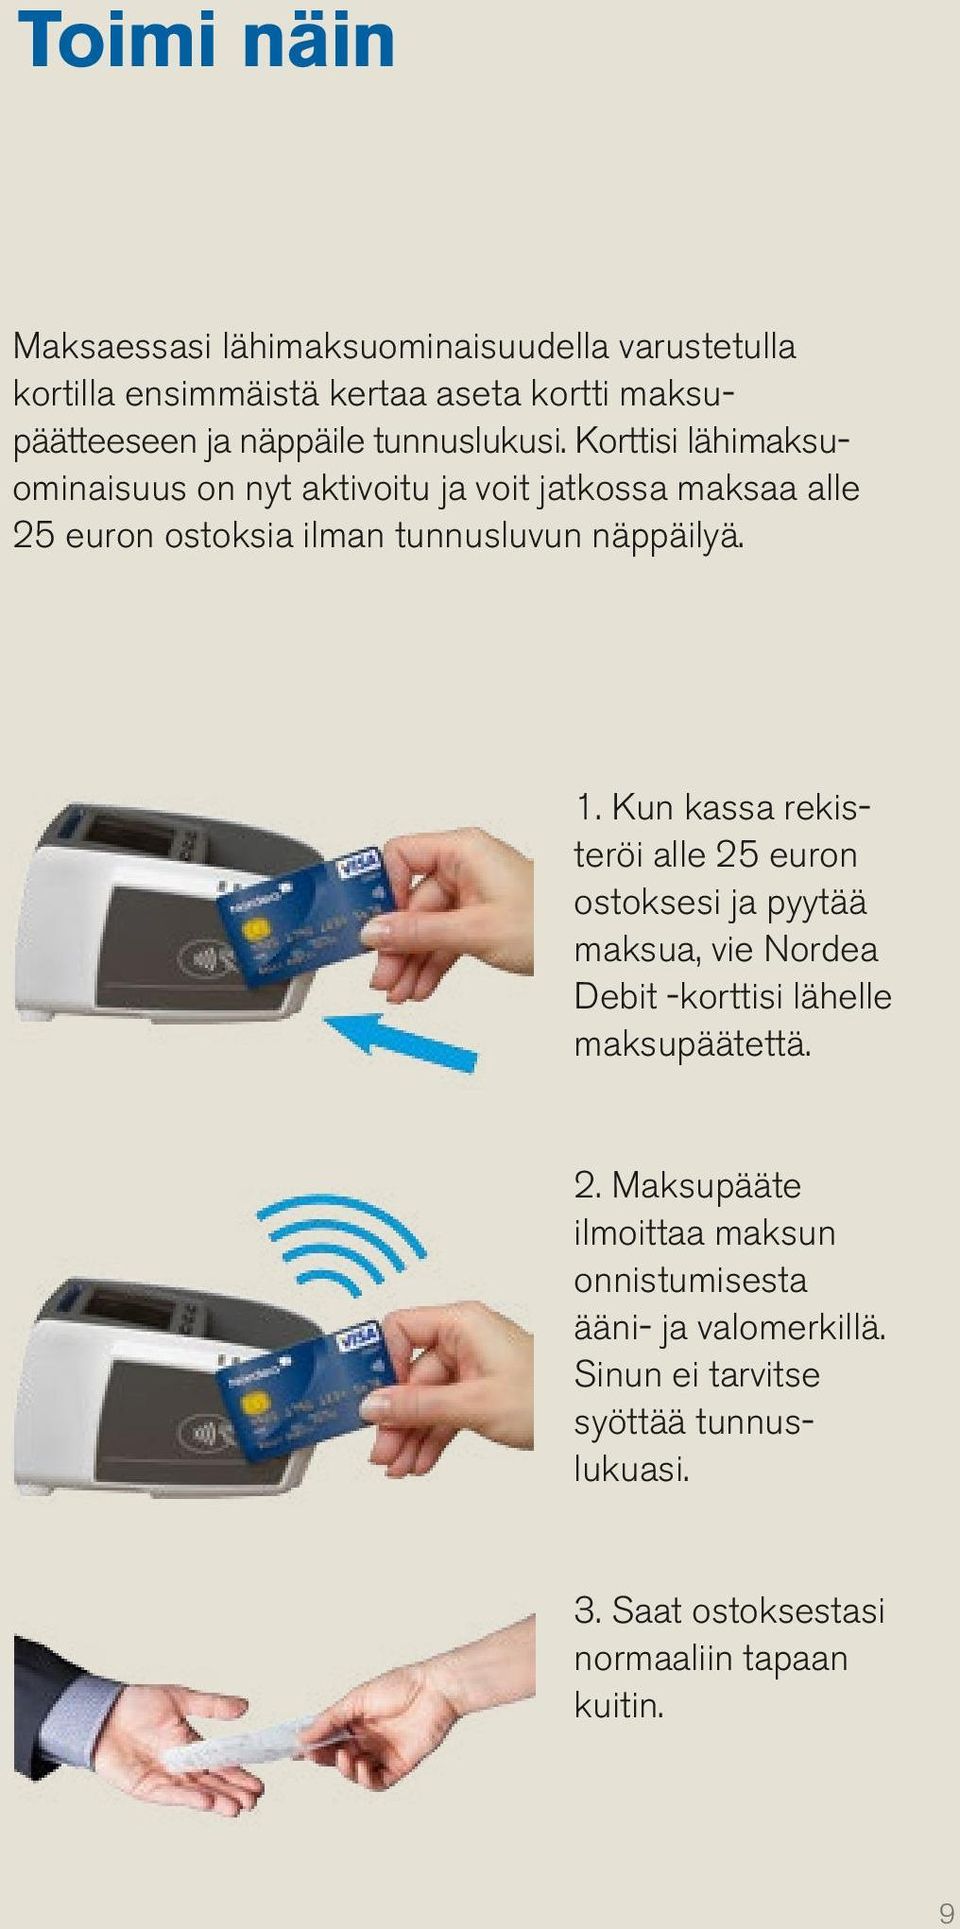 1. Kun kassa rekisteröi alle 25 euron ostoksesi ja pyytää maksua, vie Nordea Debit -korttisi lähelle maksupäätettä. 2. Maksupääte ilmoittaa maksun onnistumisesta ääni- ja valomerkillä.